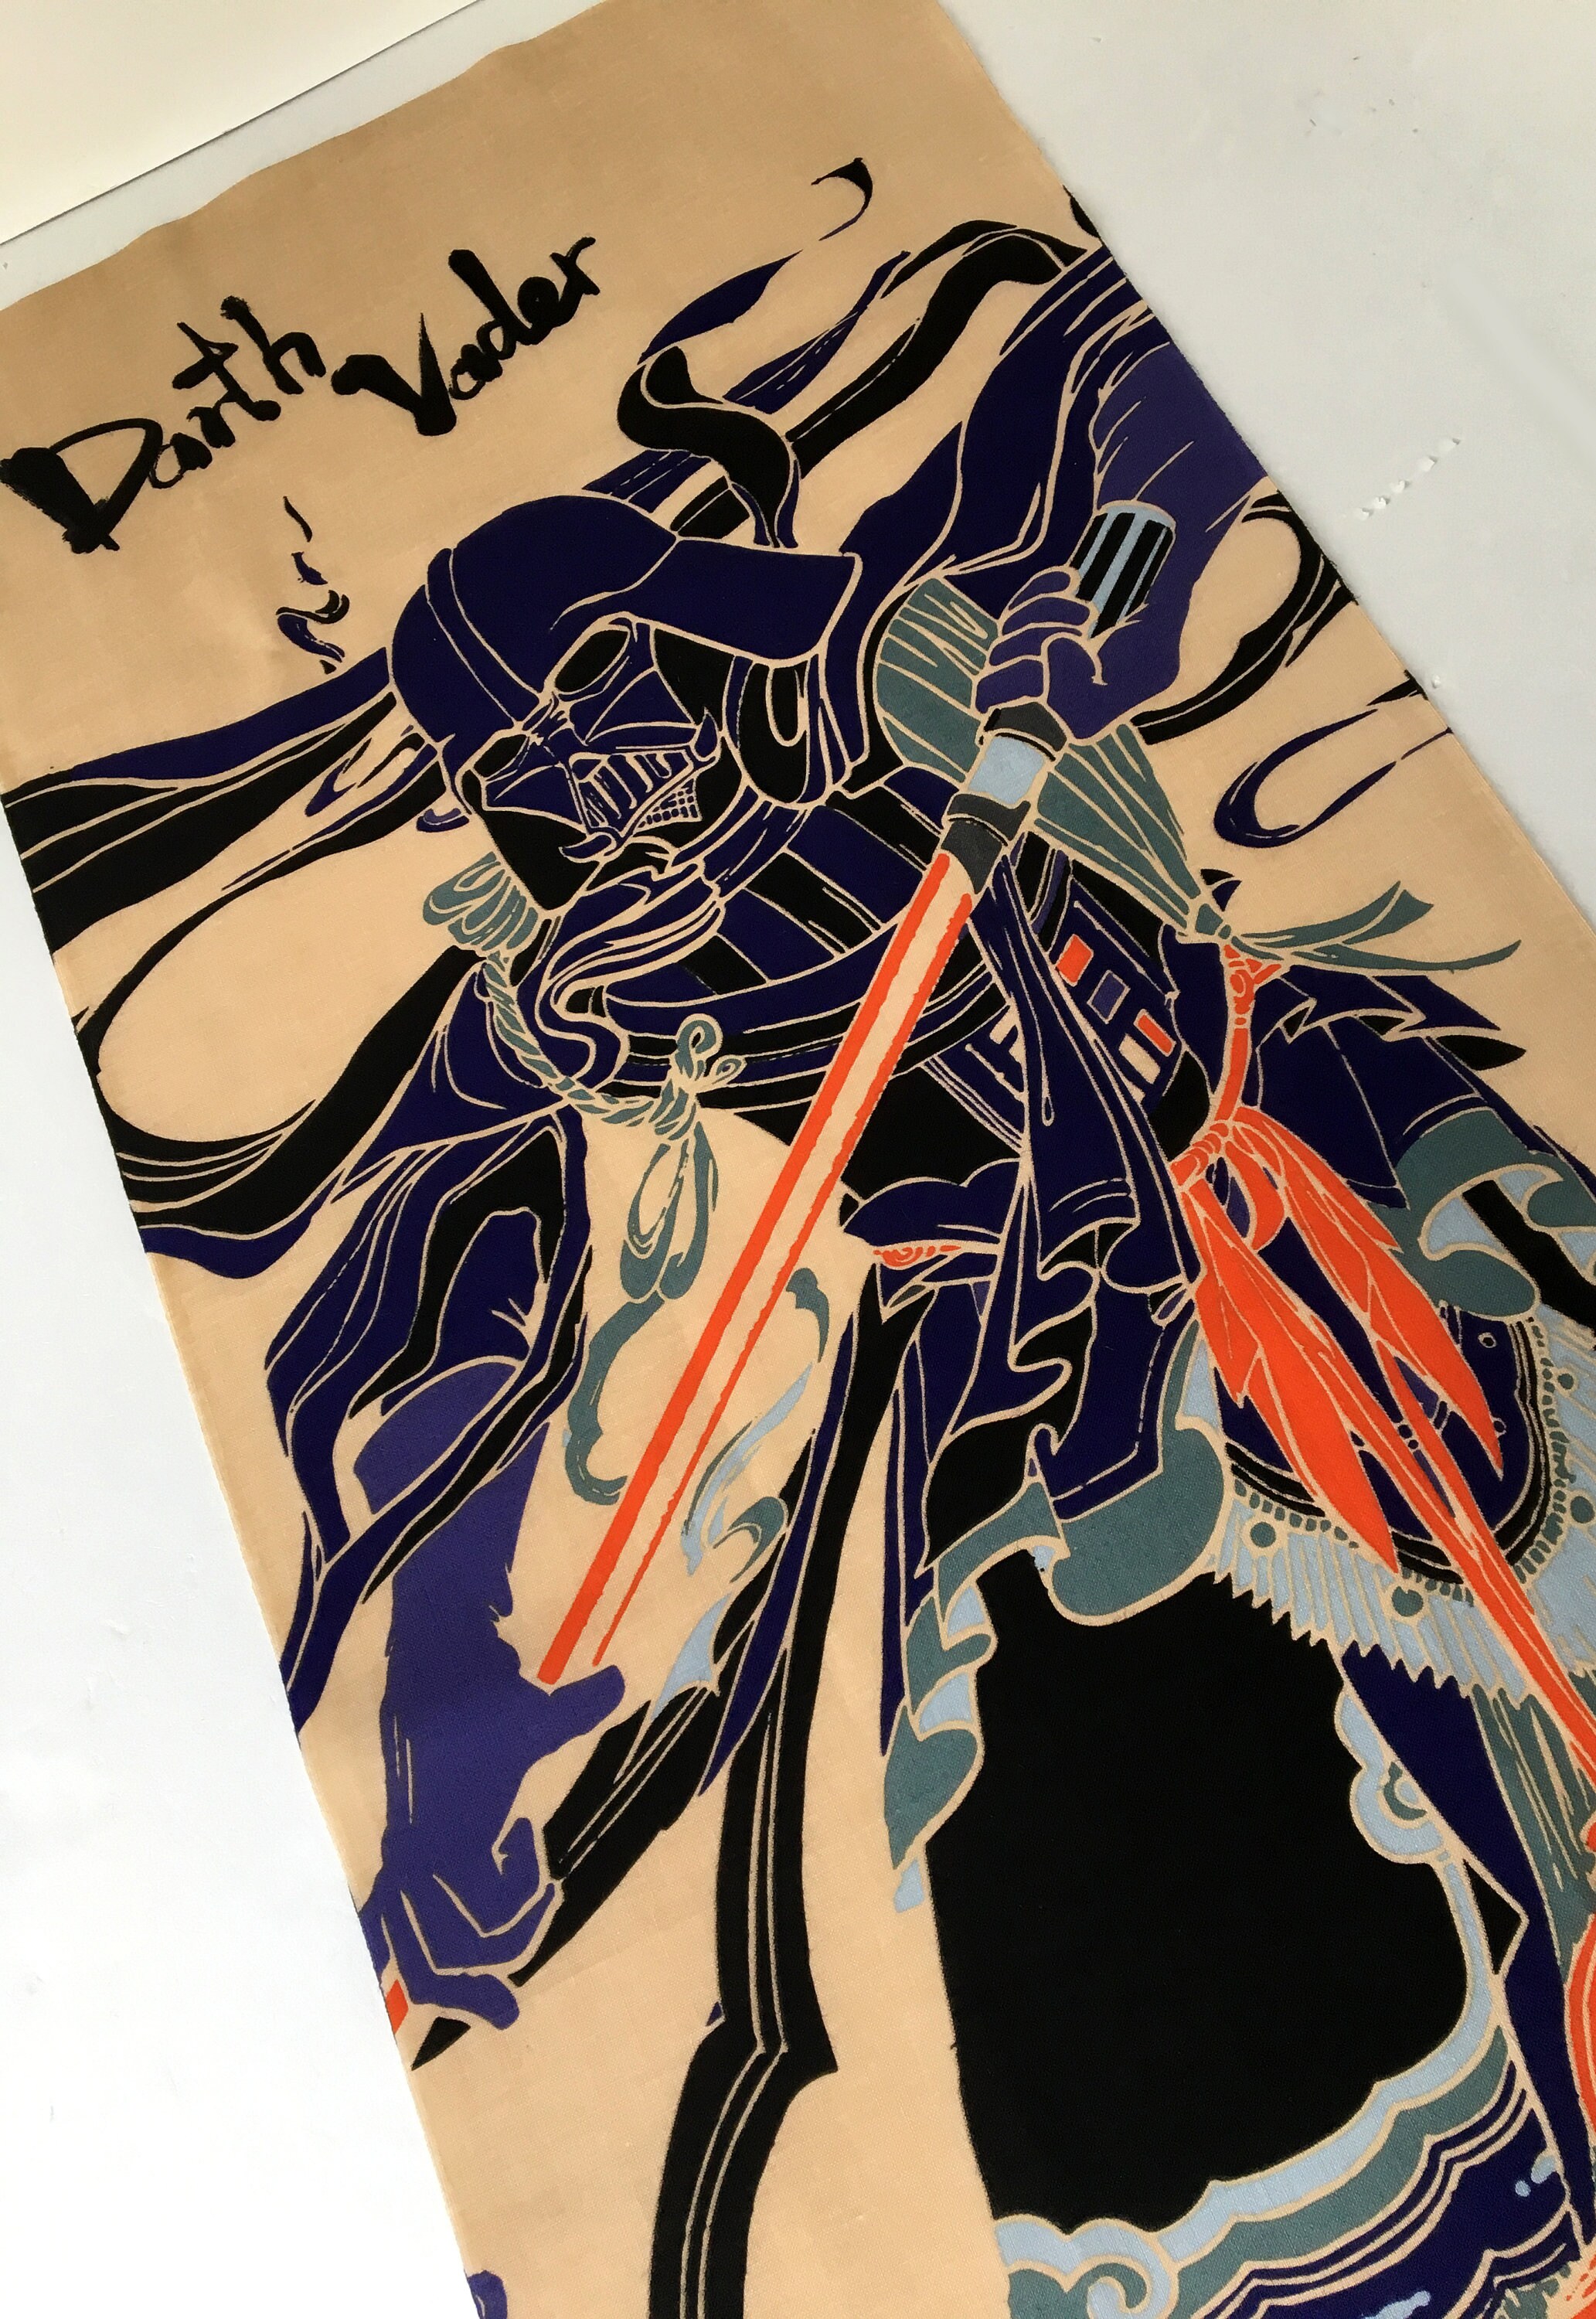 FUJI 34 X 91cm 700 STAR WARS JAPANESE TOWEL TENUGUI DARTH VADER SAMURAI MT 